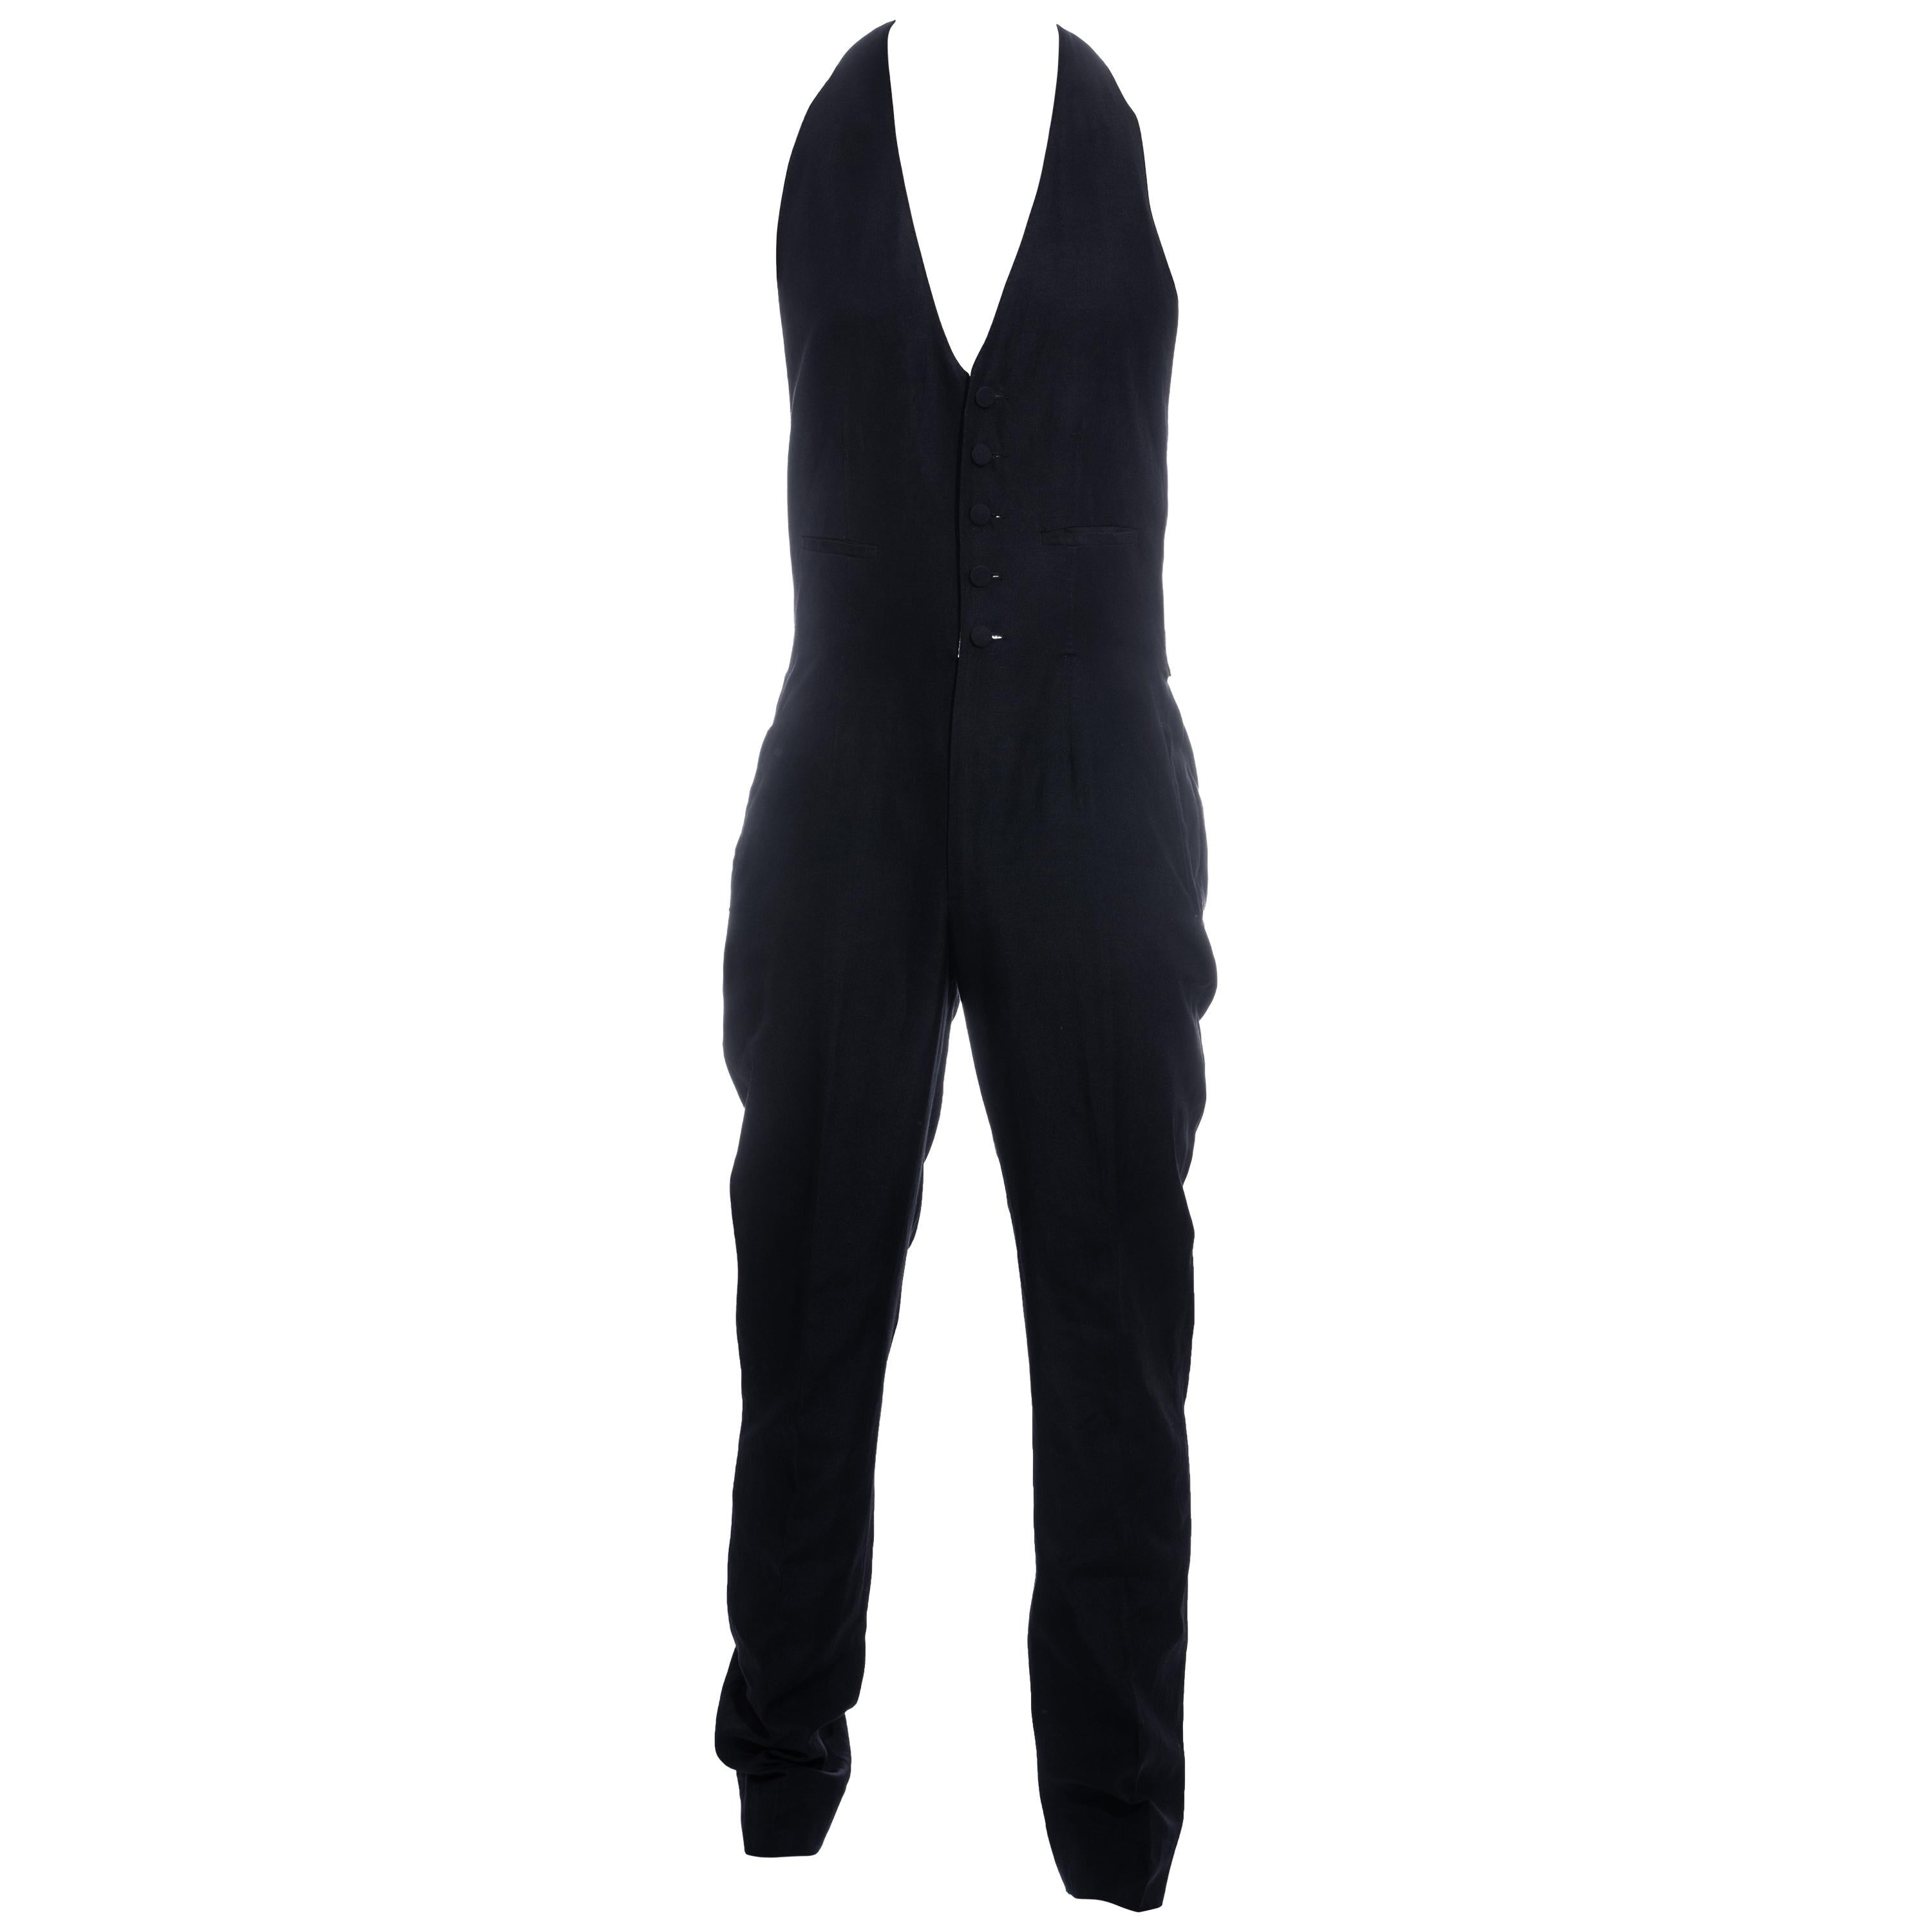 Men's Jean Paul Gaultier black wool halter-neck jumpsuit, c. 1990s